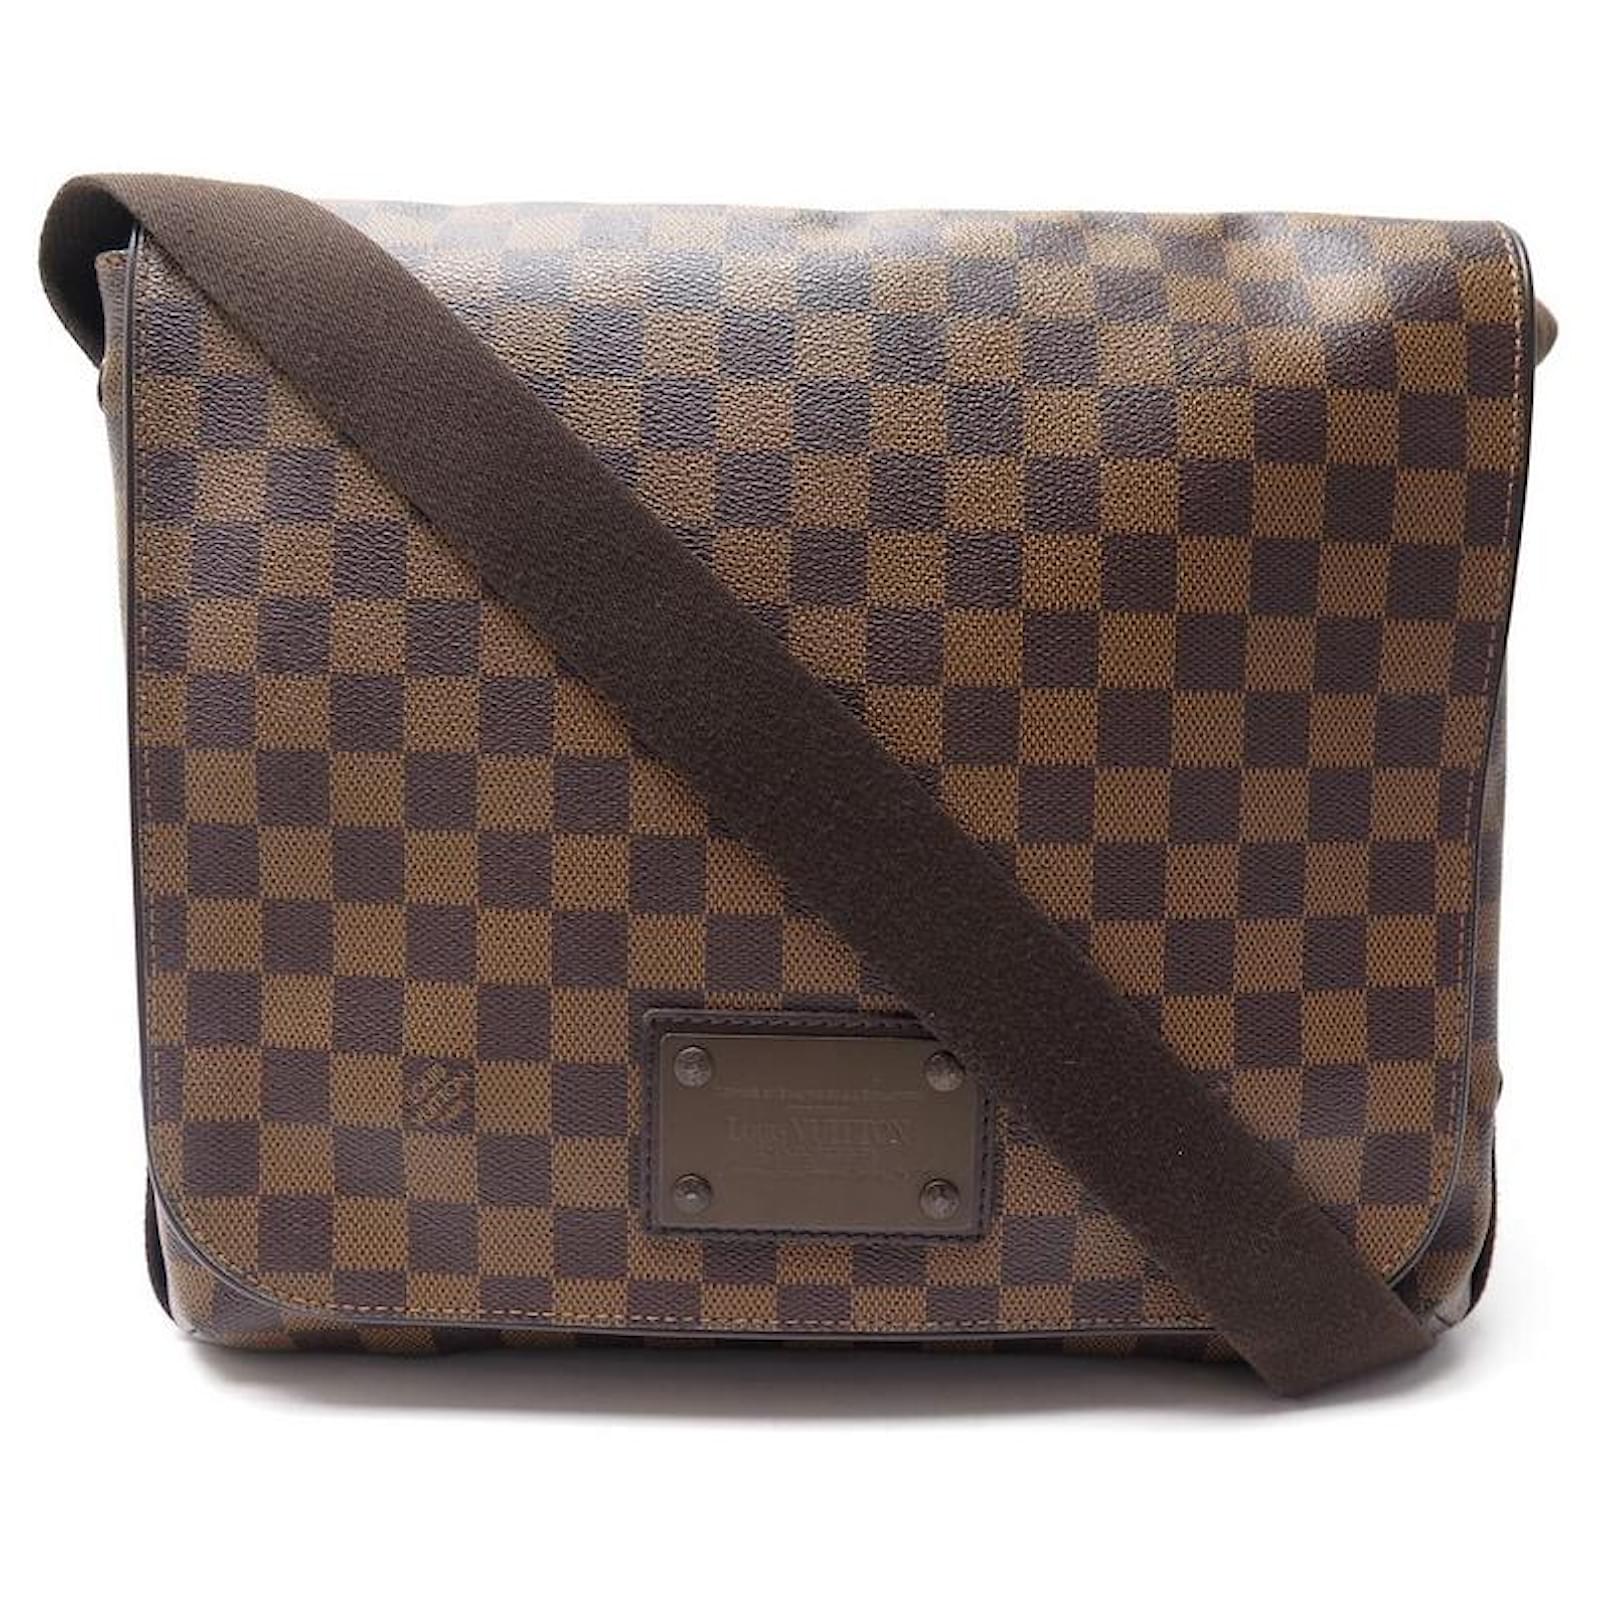 Brooklyn cloth bag Louis Vuitton Brown in Cloth - 12236673